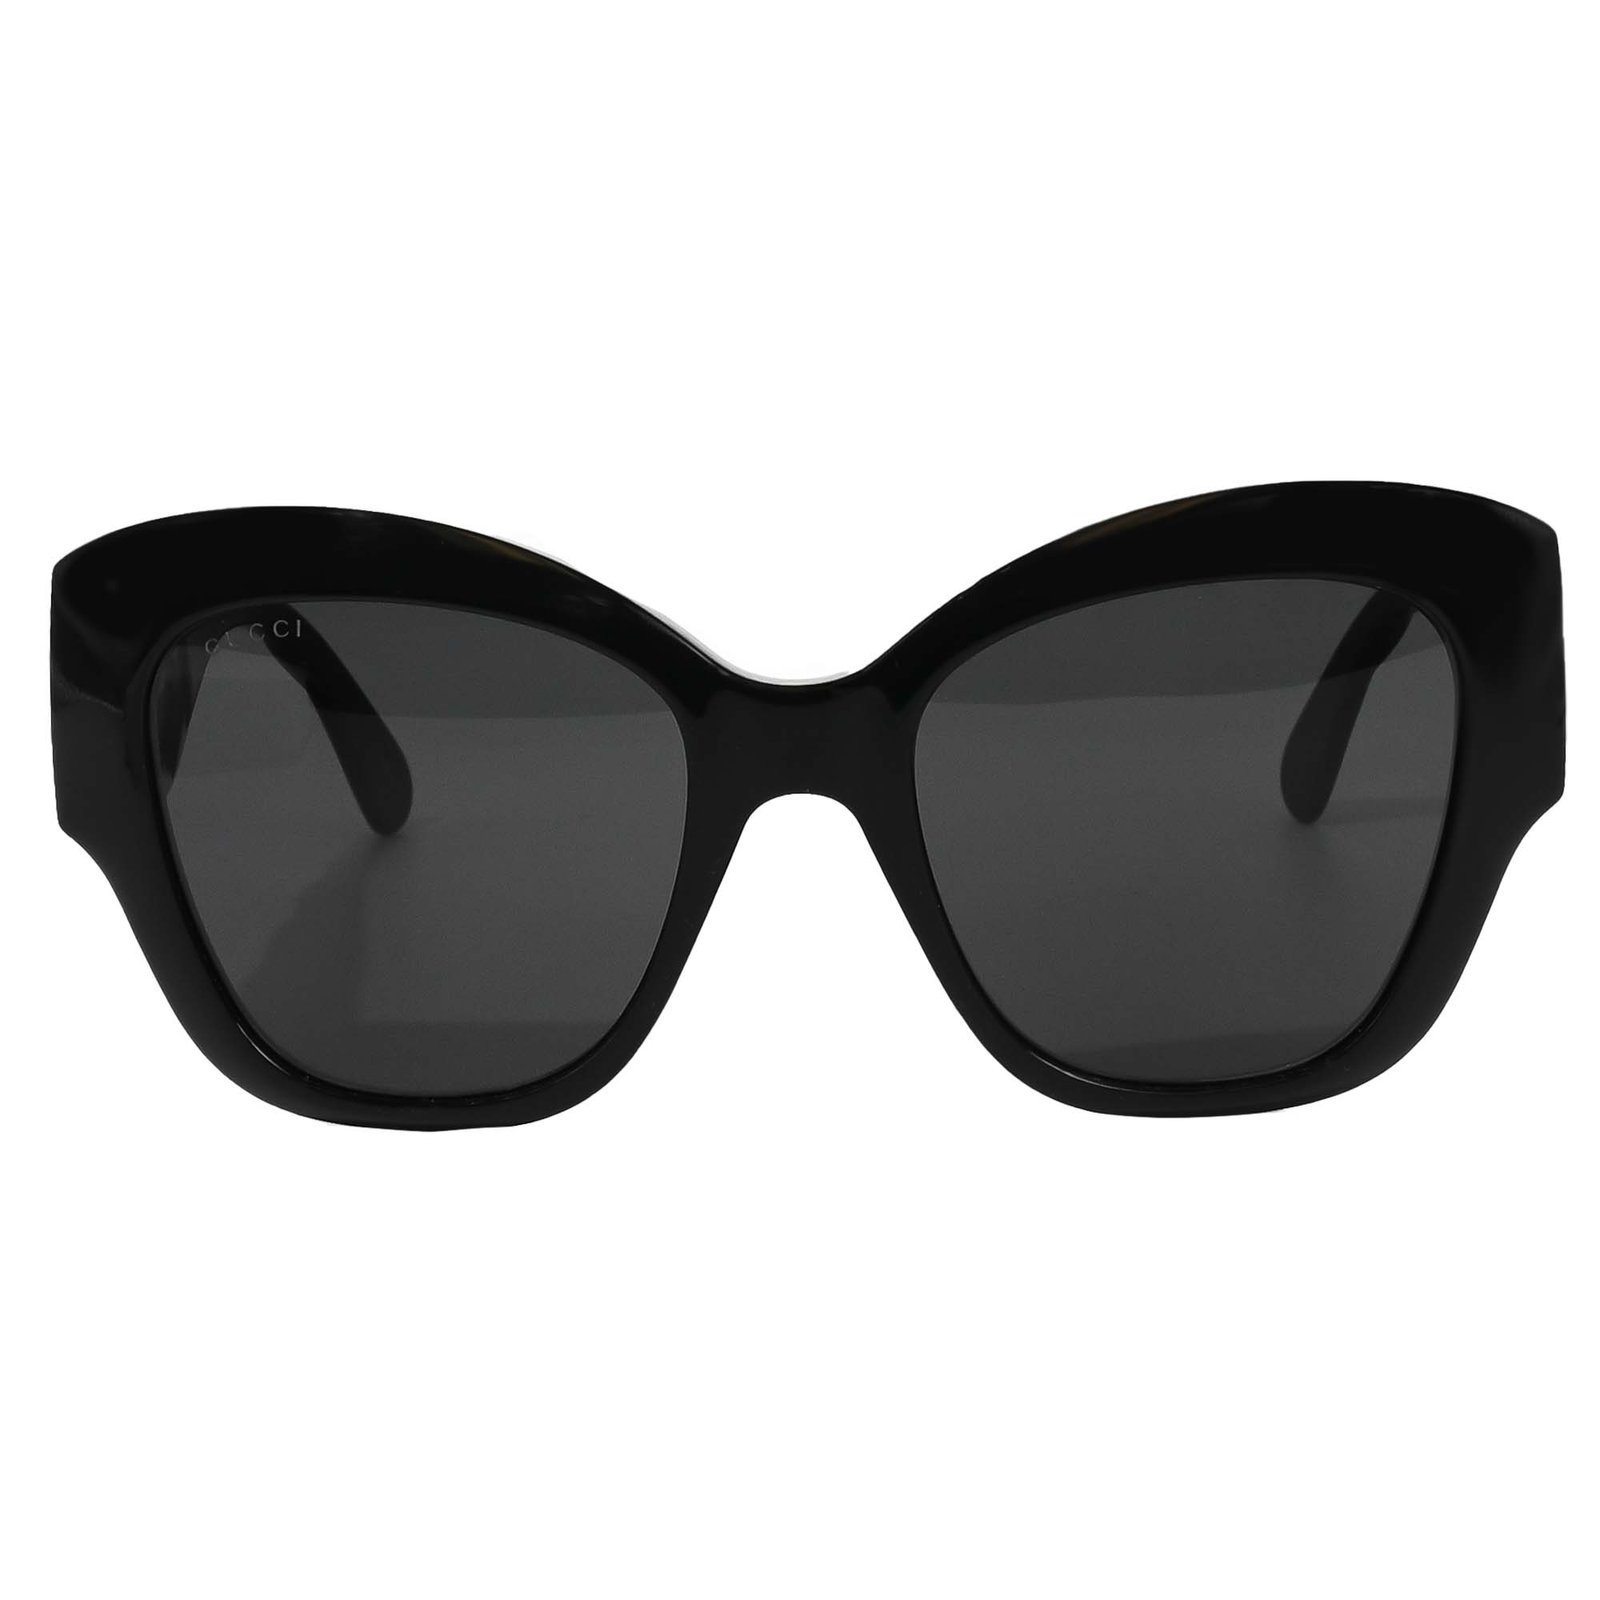 Gucci GG0808S Sunglasses - Purevision - The Sunglasses Shop in Queens